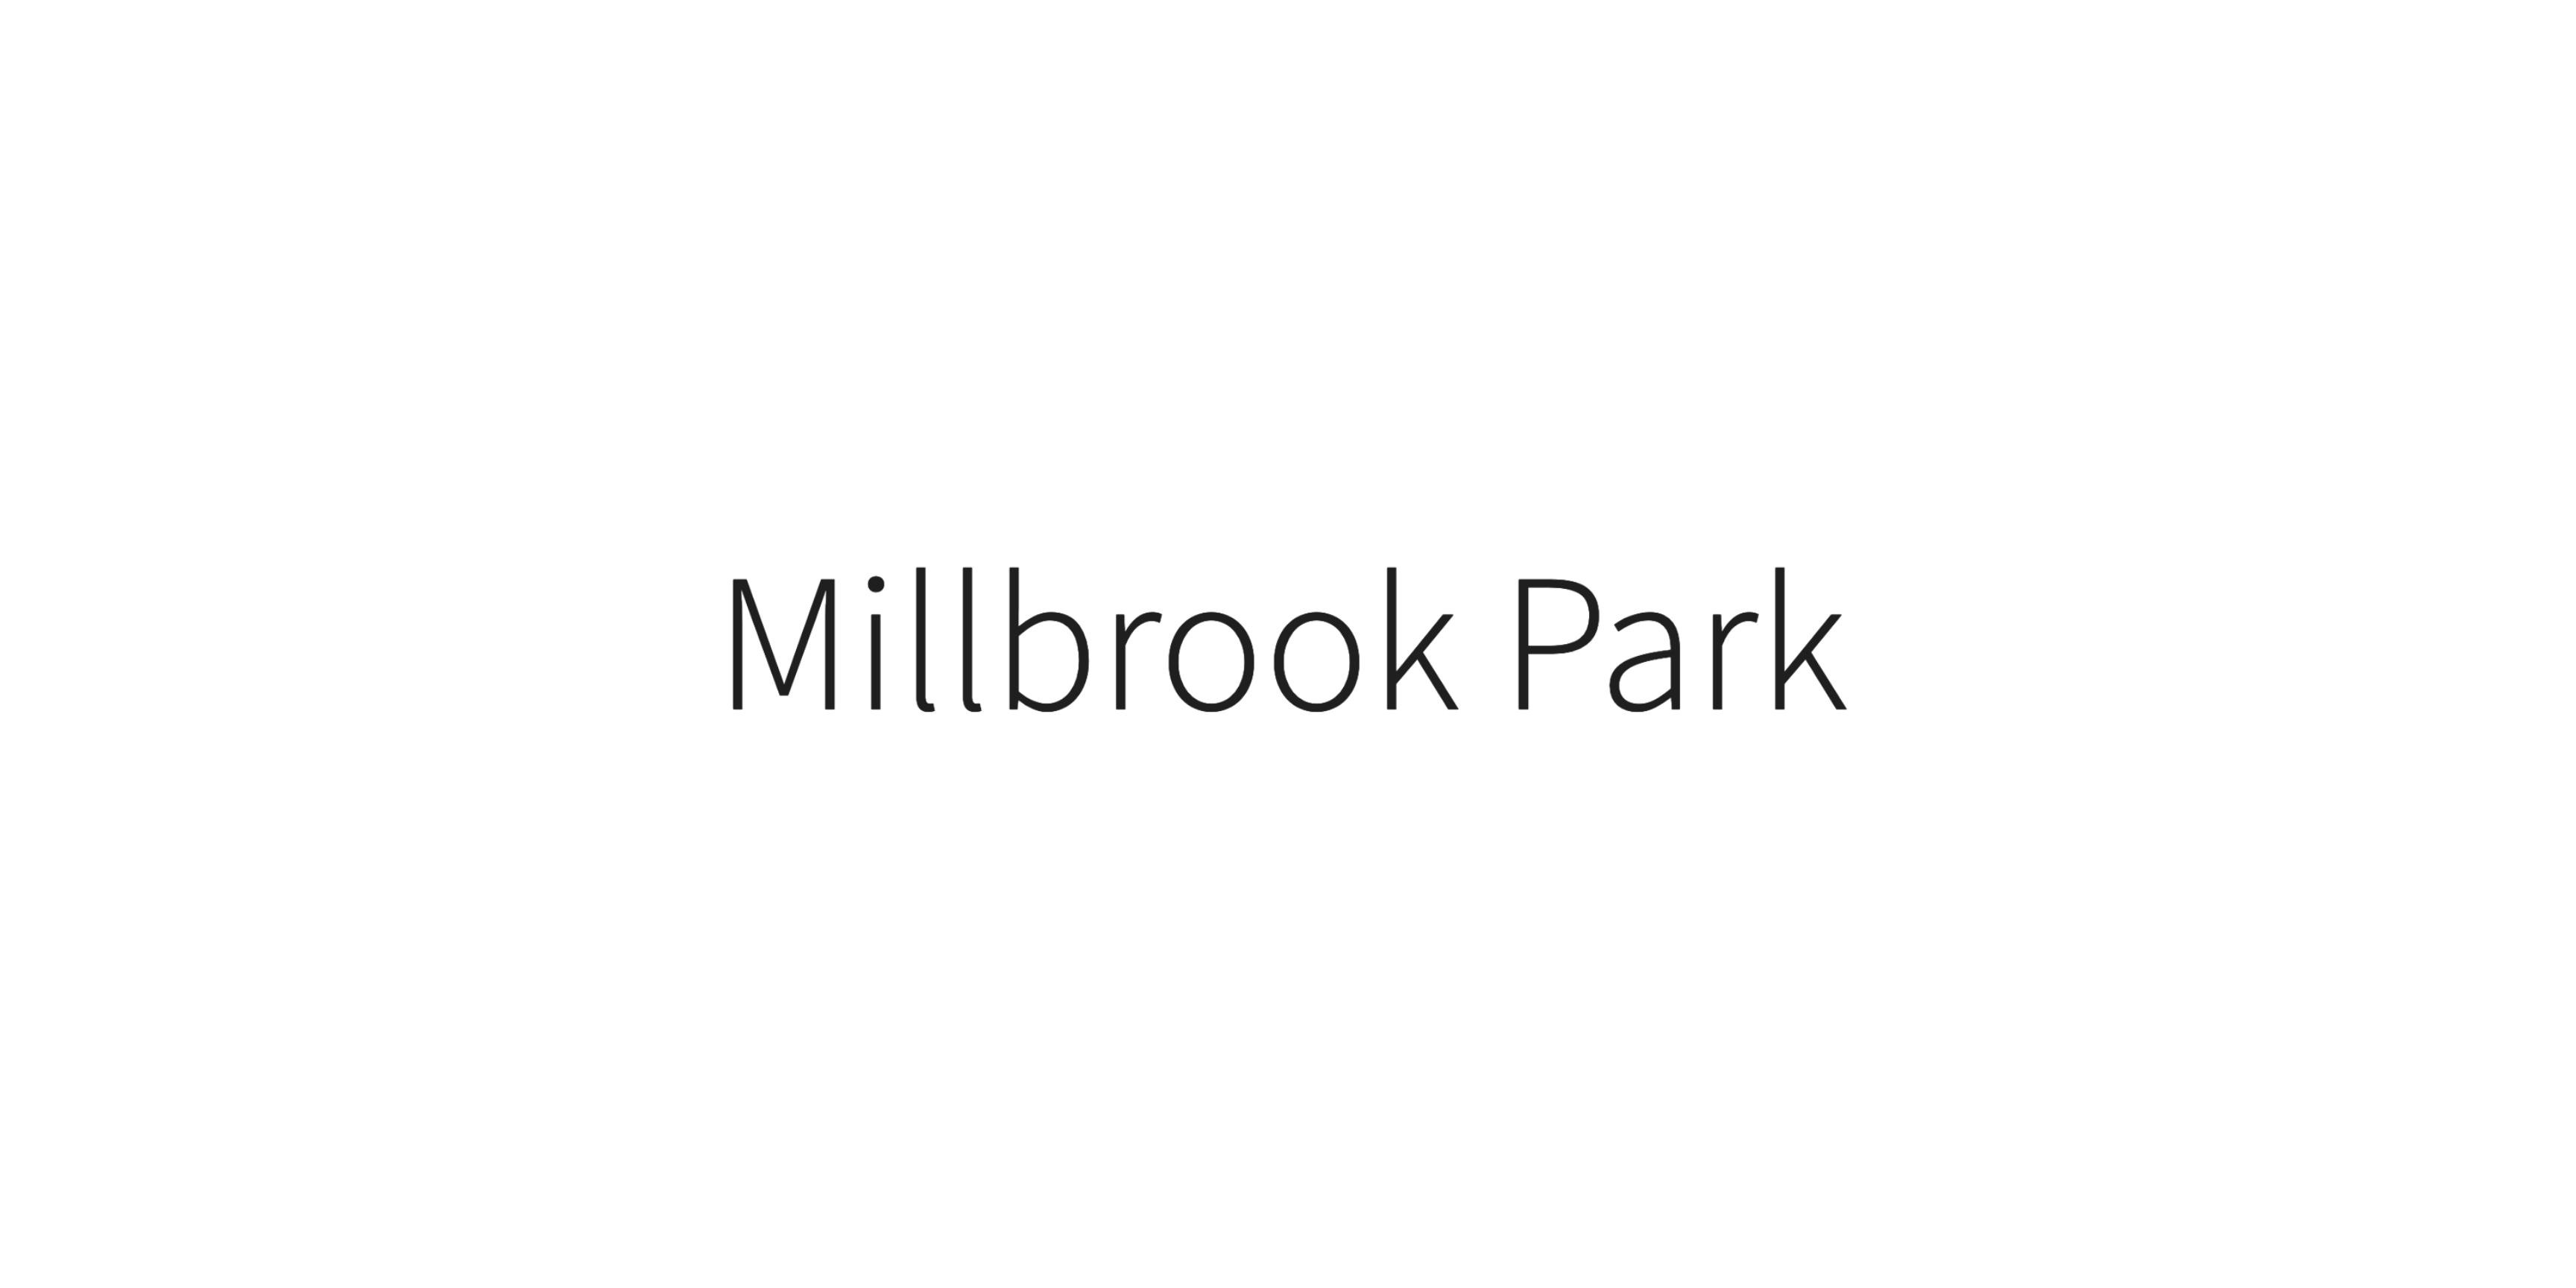 Millbrook Park by Barratt